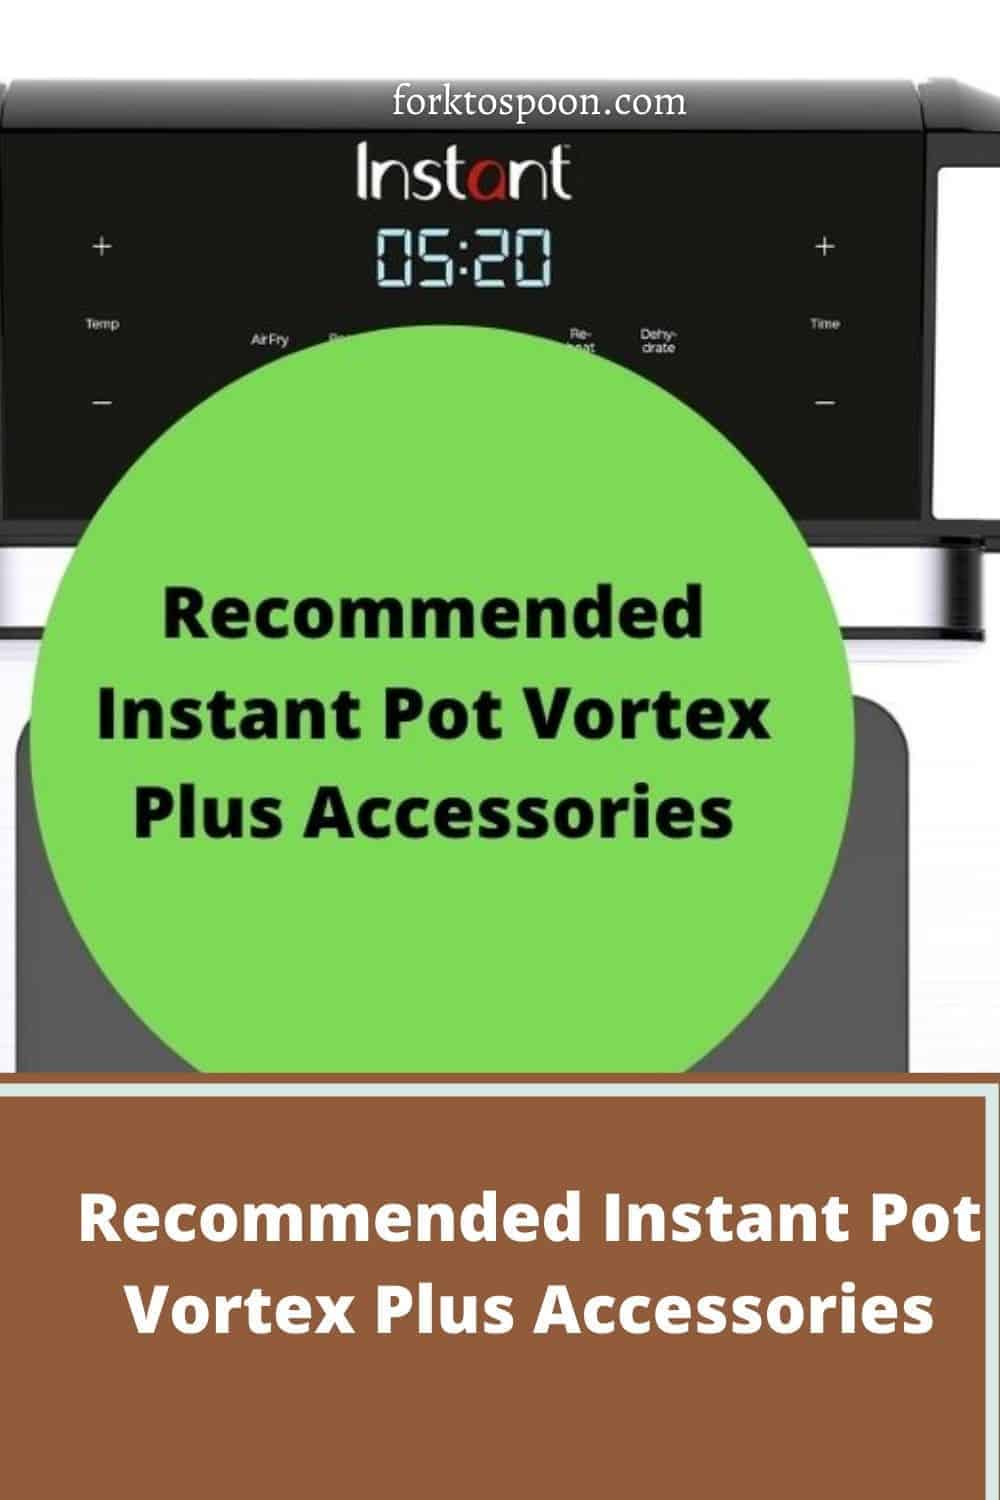 Instant Vortex Air Fryer With Accessories